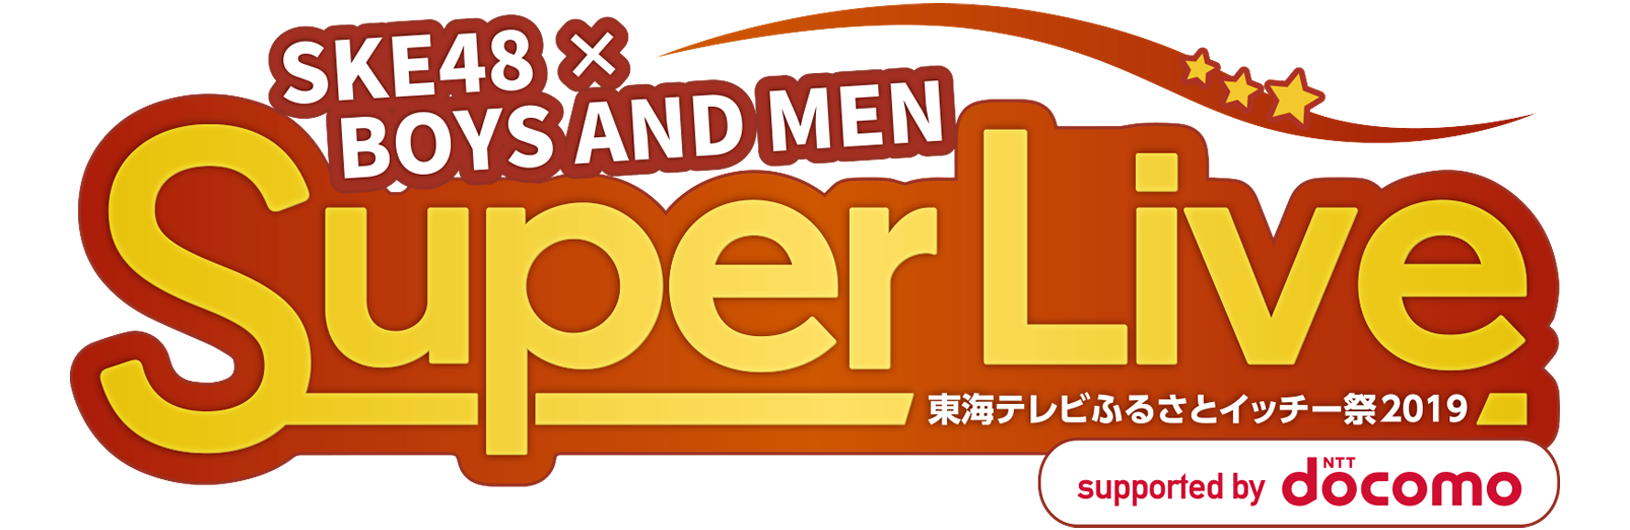 SKE48×BOYS AND MEN SuperLive イッチー祭